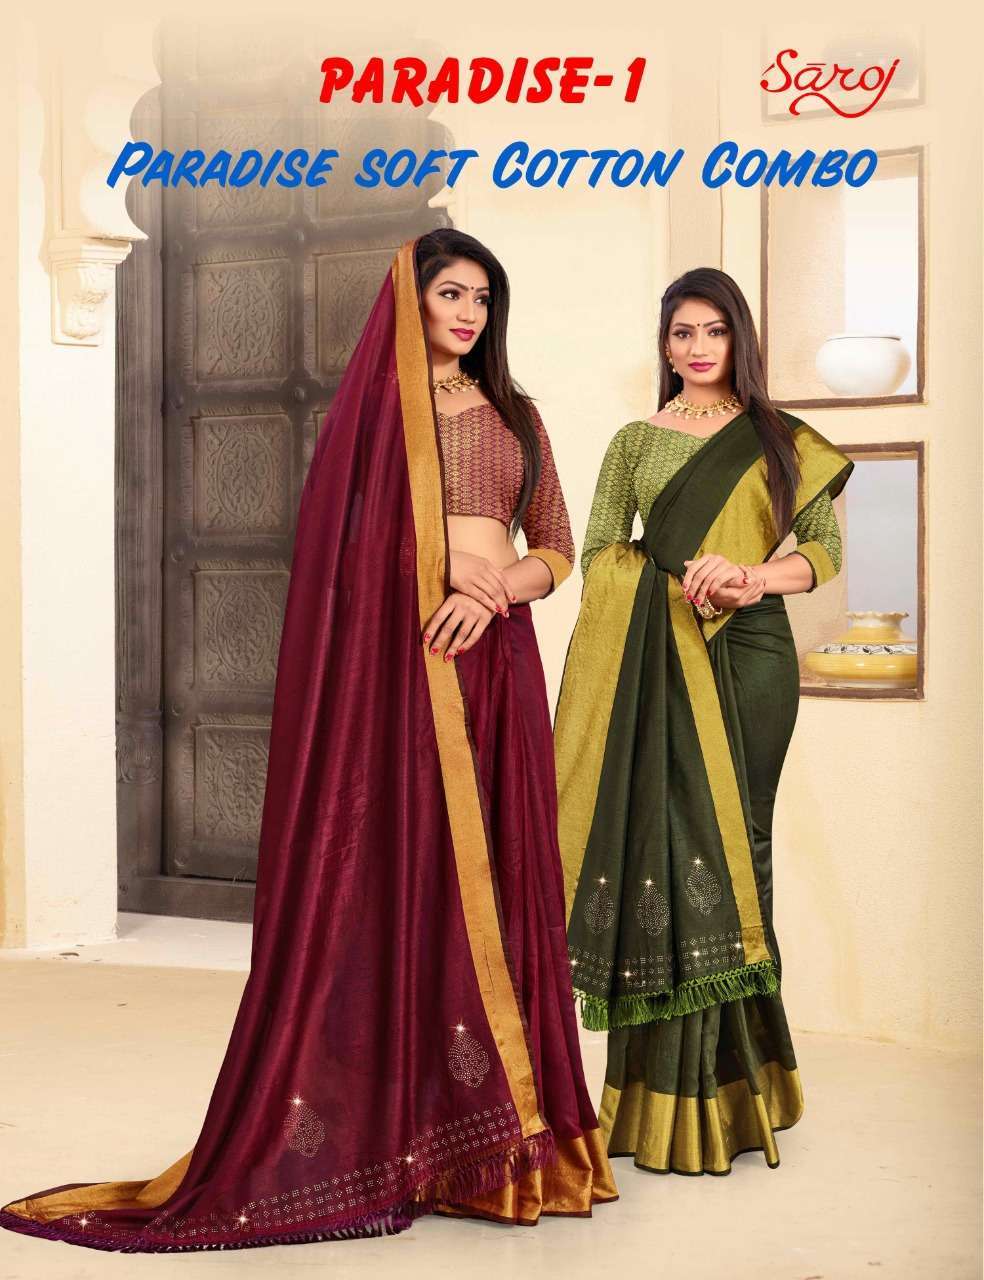 Saroj paradise vol 1 series 9801-9806 soft cotton saree